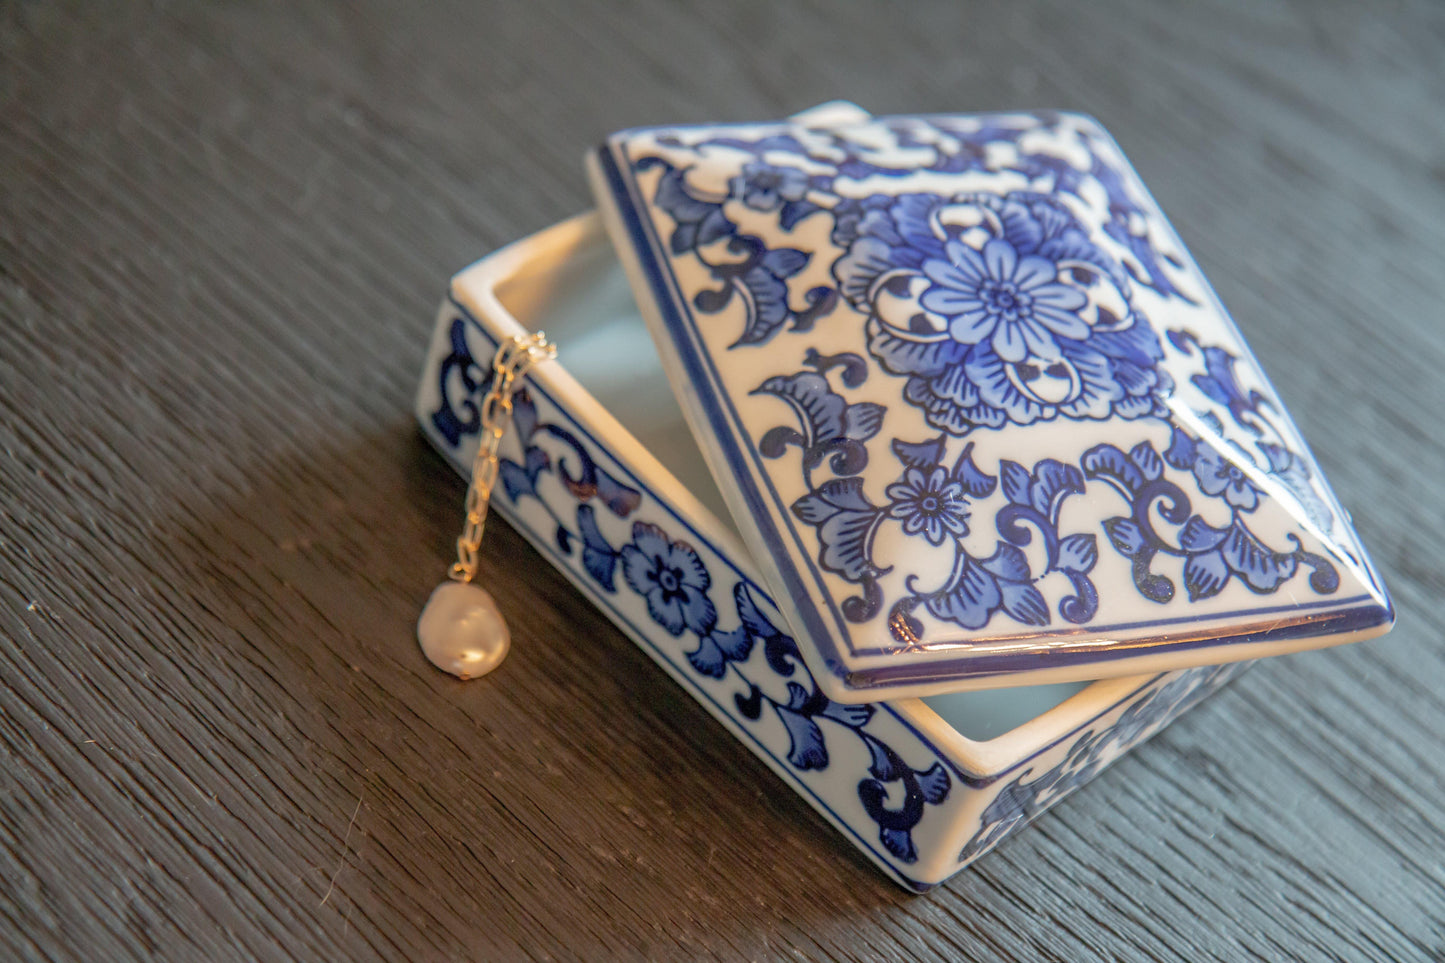 Blue Ginger Jar Trinket Box - Sorelle Gifts